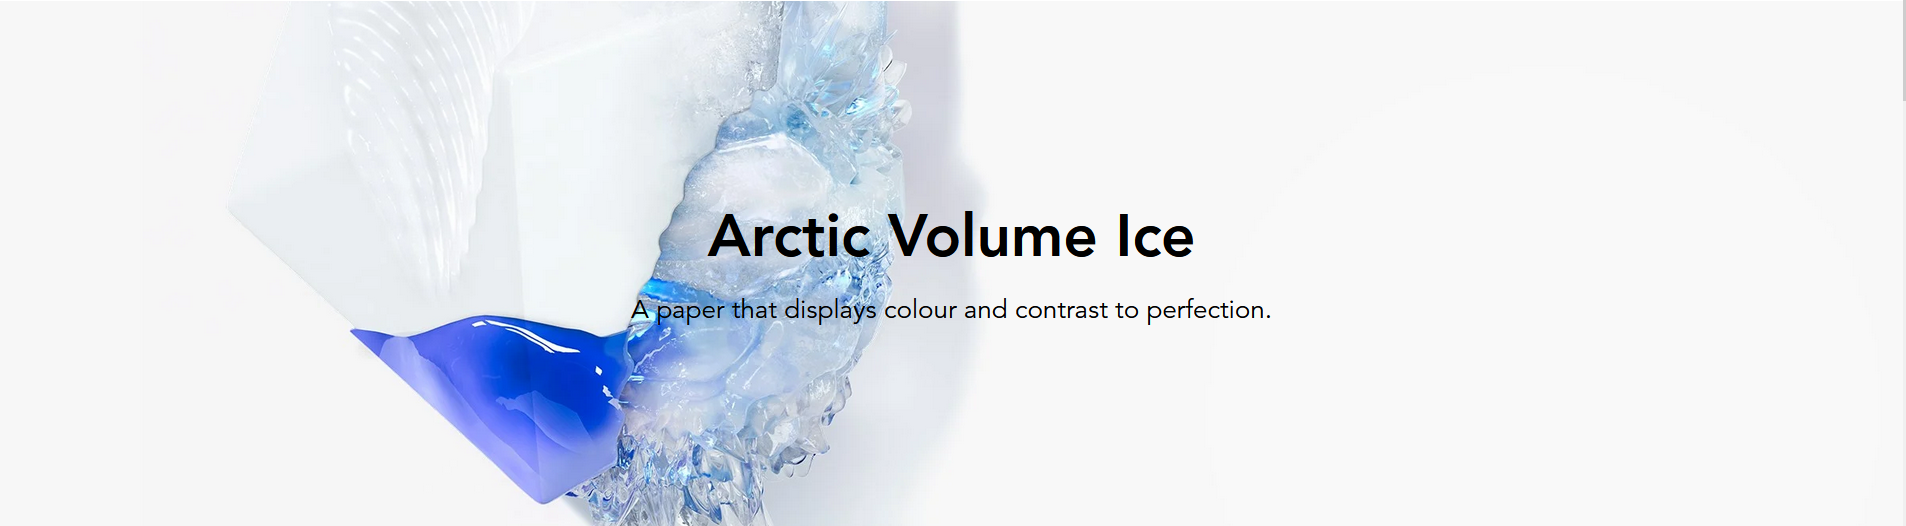 ARCTIC VOLUME ICE